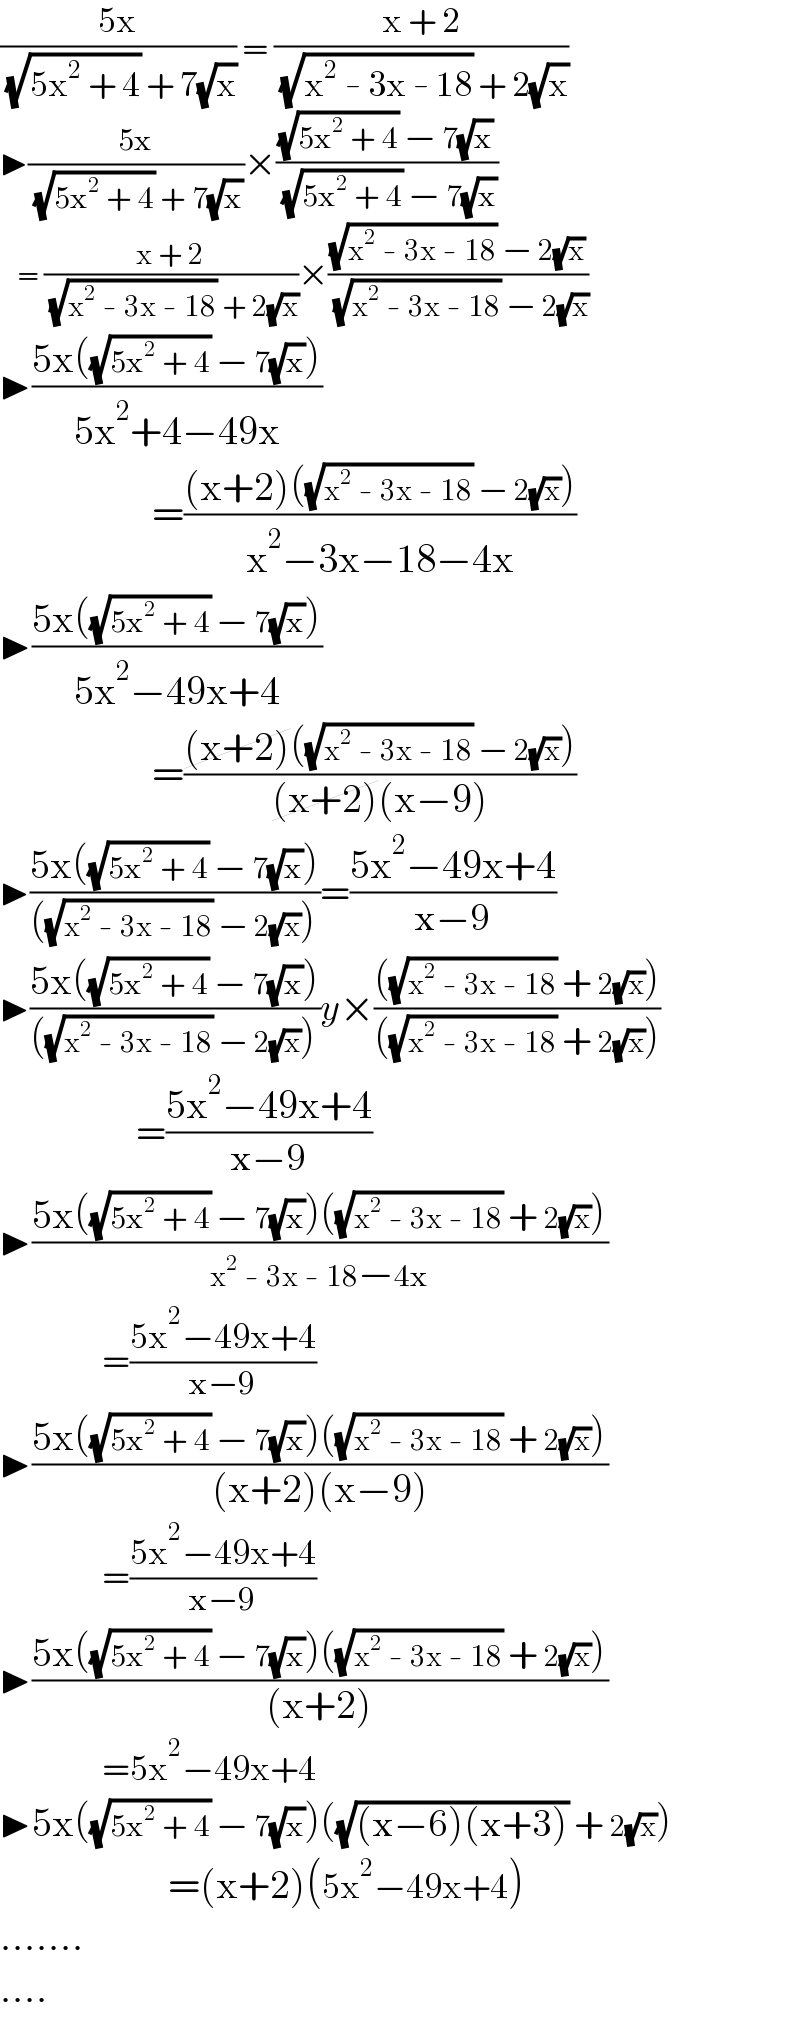 ((5x)/( (√(5x^2  + 4)) + 7(√x))) = ((x + 2)/( (√(x^2  - 3x - 18)) + 2(√x)))  ▶((5x)/( (√(5x^2  + 4)) + 7(√x)))×(((√(5x^2  + 4)) − 7(√x))/( (√(5x^2  + 4)) − 7(√x)))     = ((x + 2)/( (√(x^2  - 3x - 18)) + 2(√x)))×(((√(x^2  - 3x - 18)) − 2(√x))/( (√(x^2  - 3x - 18)) − 2(√x)))  ▶((5x((√(5x^2  + 4)) − 7(√x)))/(5x^2 +4−49x))                     =(((x+2)((√(x^2  - 3x - 18)) − 2(√x)))/(x^2 −3x−18−4x))  ▶((5x((√(5x^2  + 4)) − 7(√x)))/(5x^2 −49x+4))                     =(((x+2)((√(x^2  - 3x - 18)) − 2(√x)))/((x+2)(x−9)))  ▶((5x((√(5x^2  + 4)) − 7(√x)))/(((√(x^2  - 3x - 18)) − 2(√x))))=((5x^2 −49x+4)/(x−9))  ▶((5x((√(5x^2  + 4)) − 7(√x)))/(((√(x^2  - 3x - 18)) − 2(√x))))y×((((√(x^2  - 3x - 18)) + 2(√x)))/(((√(x^2  - 3x - 18)) + 2(√x))))                   =((5x^2 −49x+4)/(x−9))  ▶((5x((√(5x^2  + 4)) − 7(√x))((√(x^2  - 3x - 18)) + 2(√x)))/(x^2  - 3x - 18−4x))                   =((5x^2 −49x+4)/(x−9))  ▶((5x((√(5x^2  + 4)) − 7(√x))((√(x^2  - 3x - 18)) + 2(√x)))/((x+2)(x−9)))                   =((5x^2 −49x+4)/(x−9))  ▶((5x((√(5x^2  + 4)) − 7(√x))((√(x^2  - 3x - 18)) + 2(√x)))/((x+2)))                   =5x^2 −49x+4  ▶5x((√(5x^2  + 4)) − 7(√x))((√((x−6)(x+3))) + 2(√x))                       =(x+2)(5x^2 −49x+4)  .......  ....  